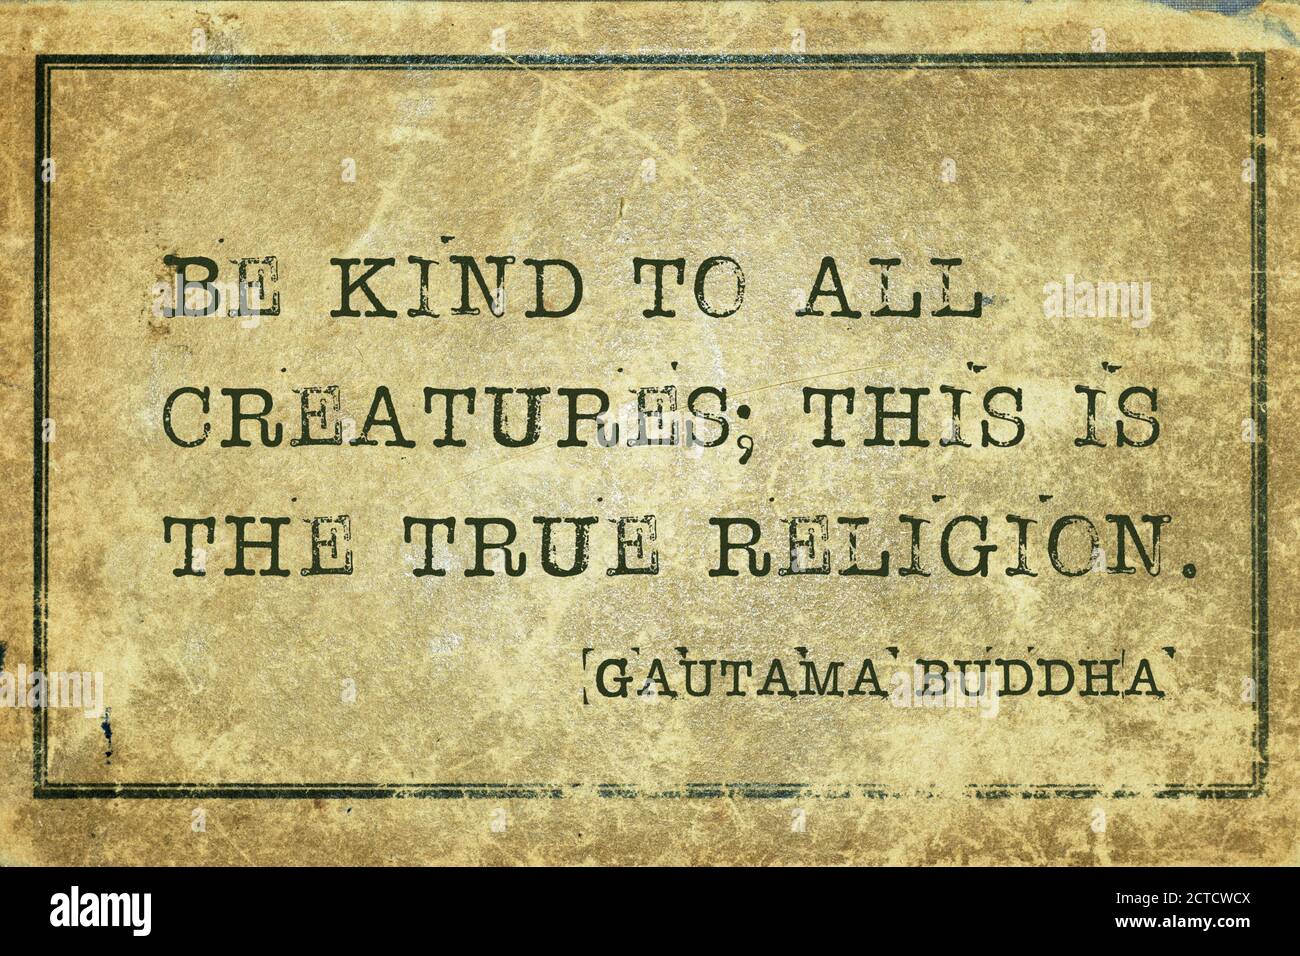 Seien Sie freundlich zu allen Kreaturen; dies ist die wahre Religion - berühmte Zitat von Gautama Buddha gedruckt auf Grunge Vintage Karton Stockfoto